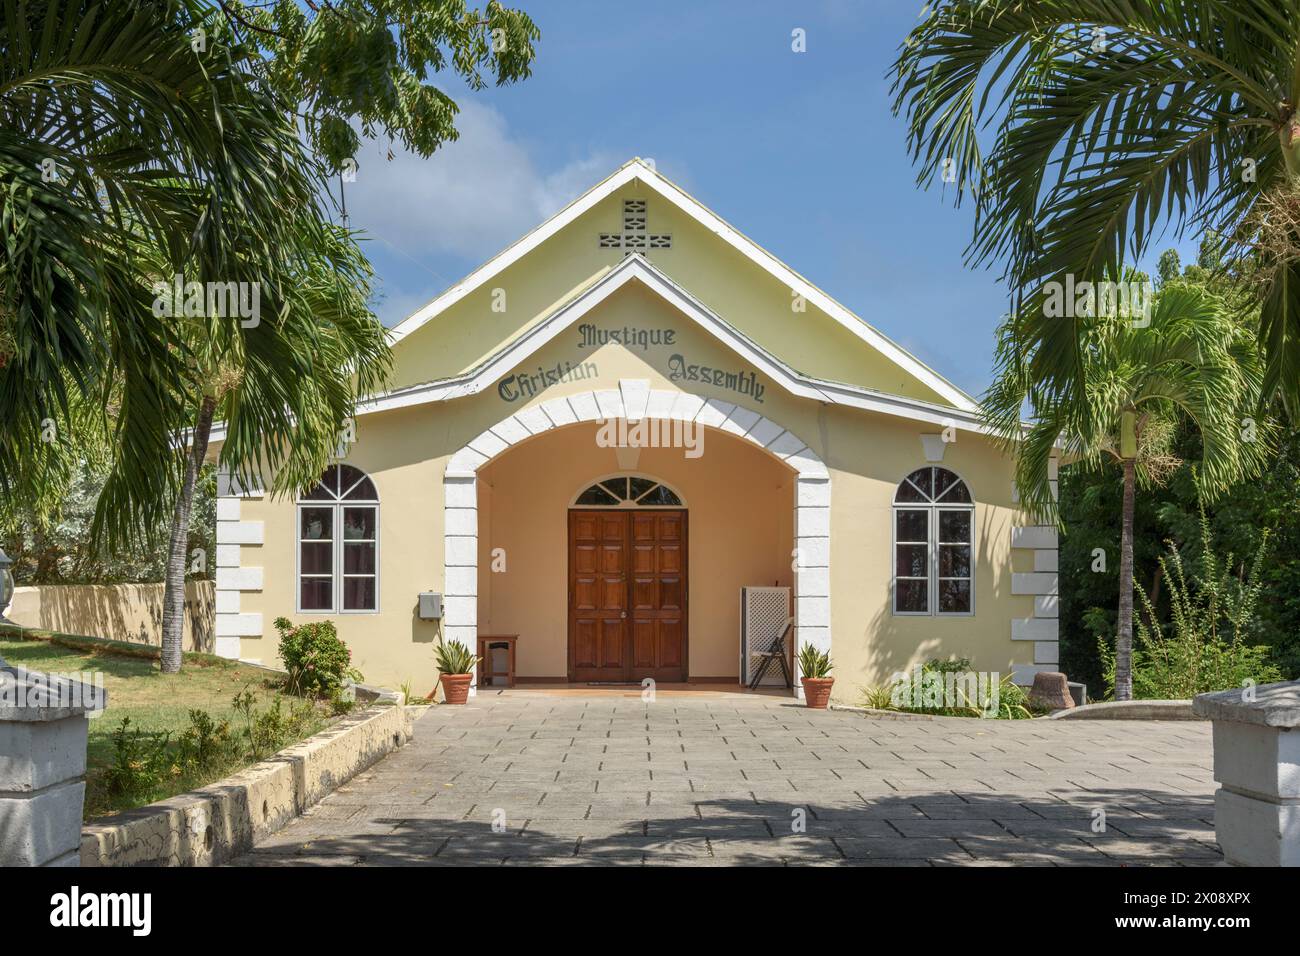 Église de l'Assemblée chrétienne de Mustique à Lovell Village, Mustique Island, St Vincent et les Grenadines, Caraïbes Banque D'Images